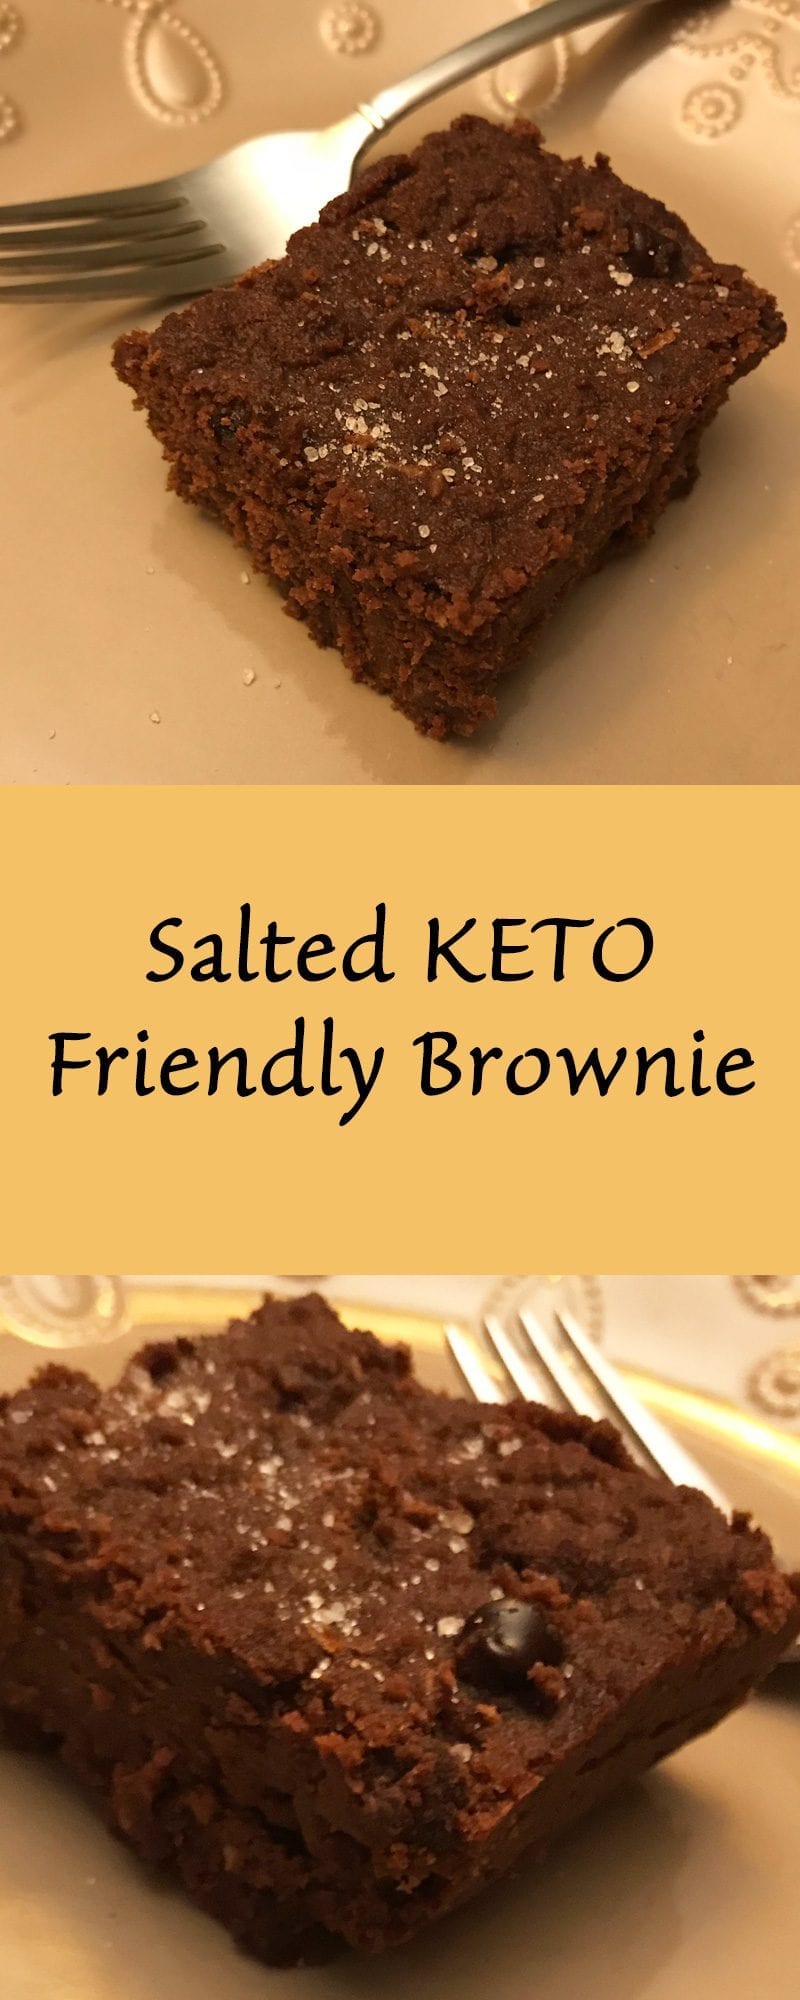 Keto friendly salted brownie